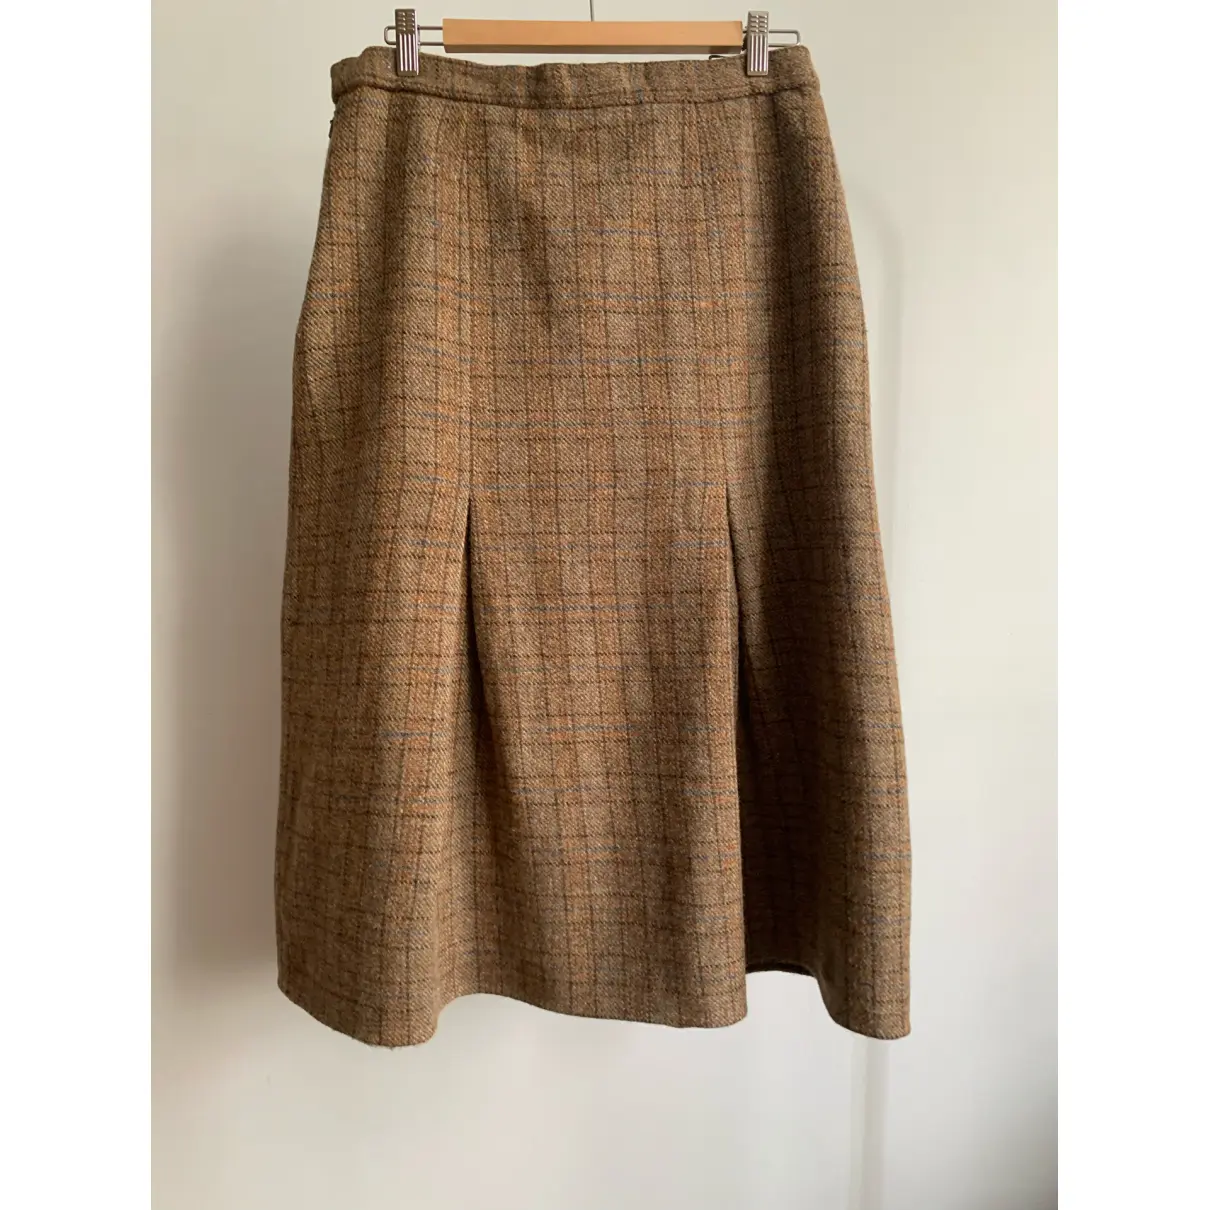 Buy HARRIS TWEED Wool mid-length skirt online